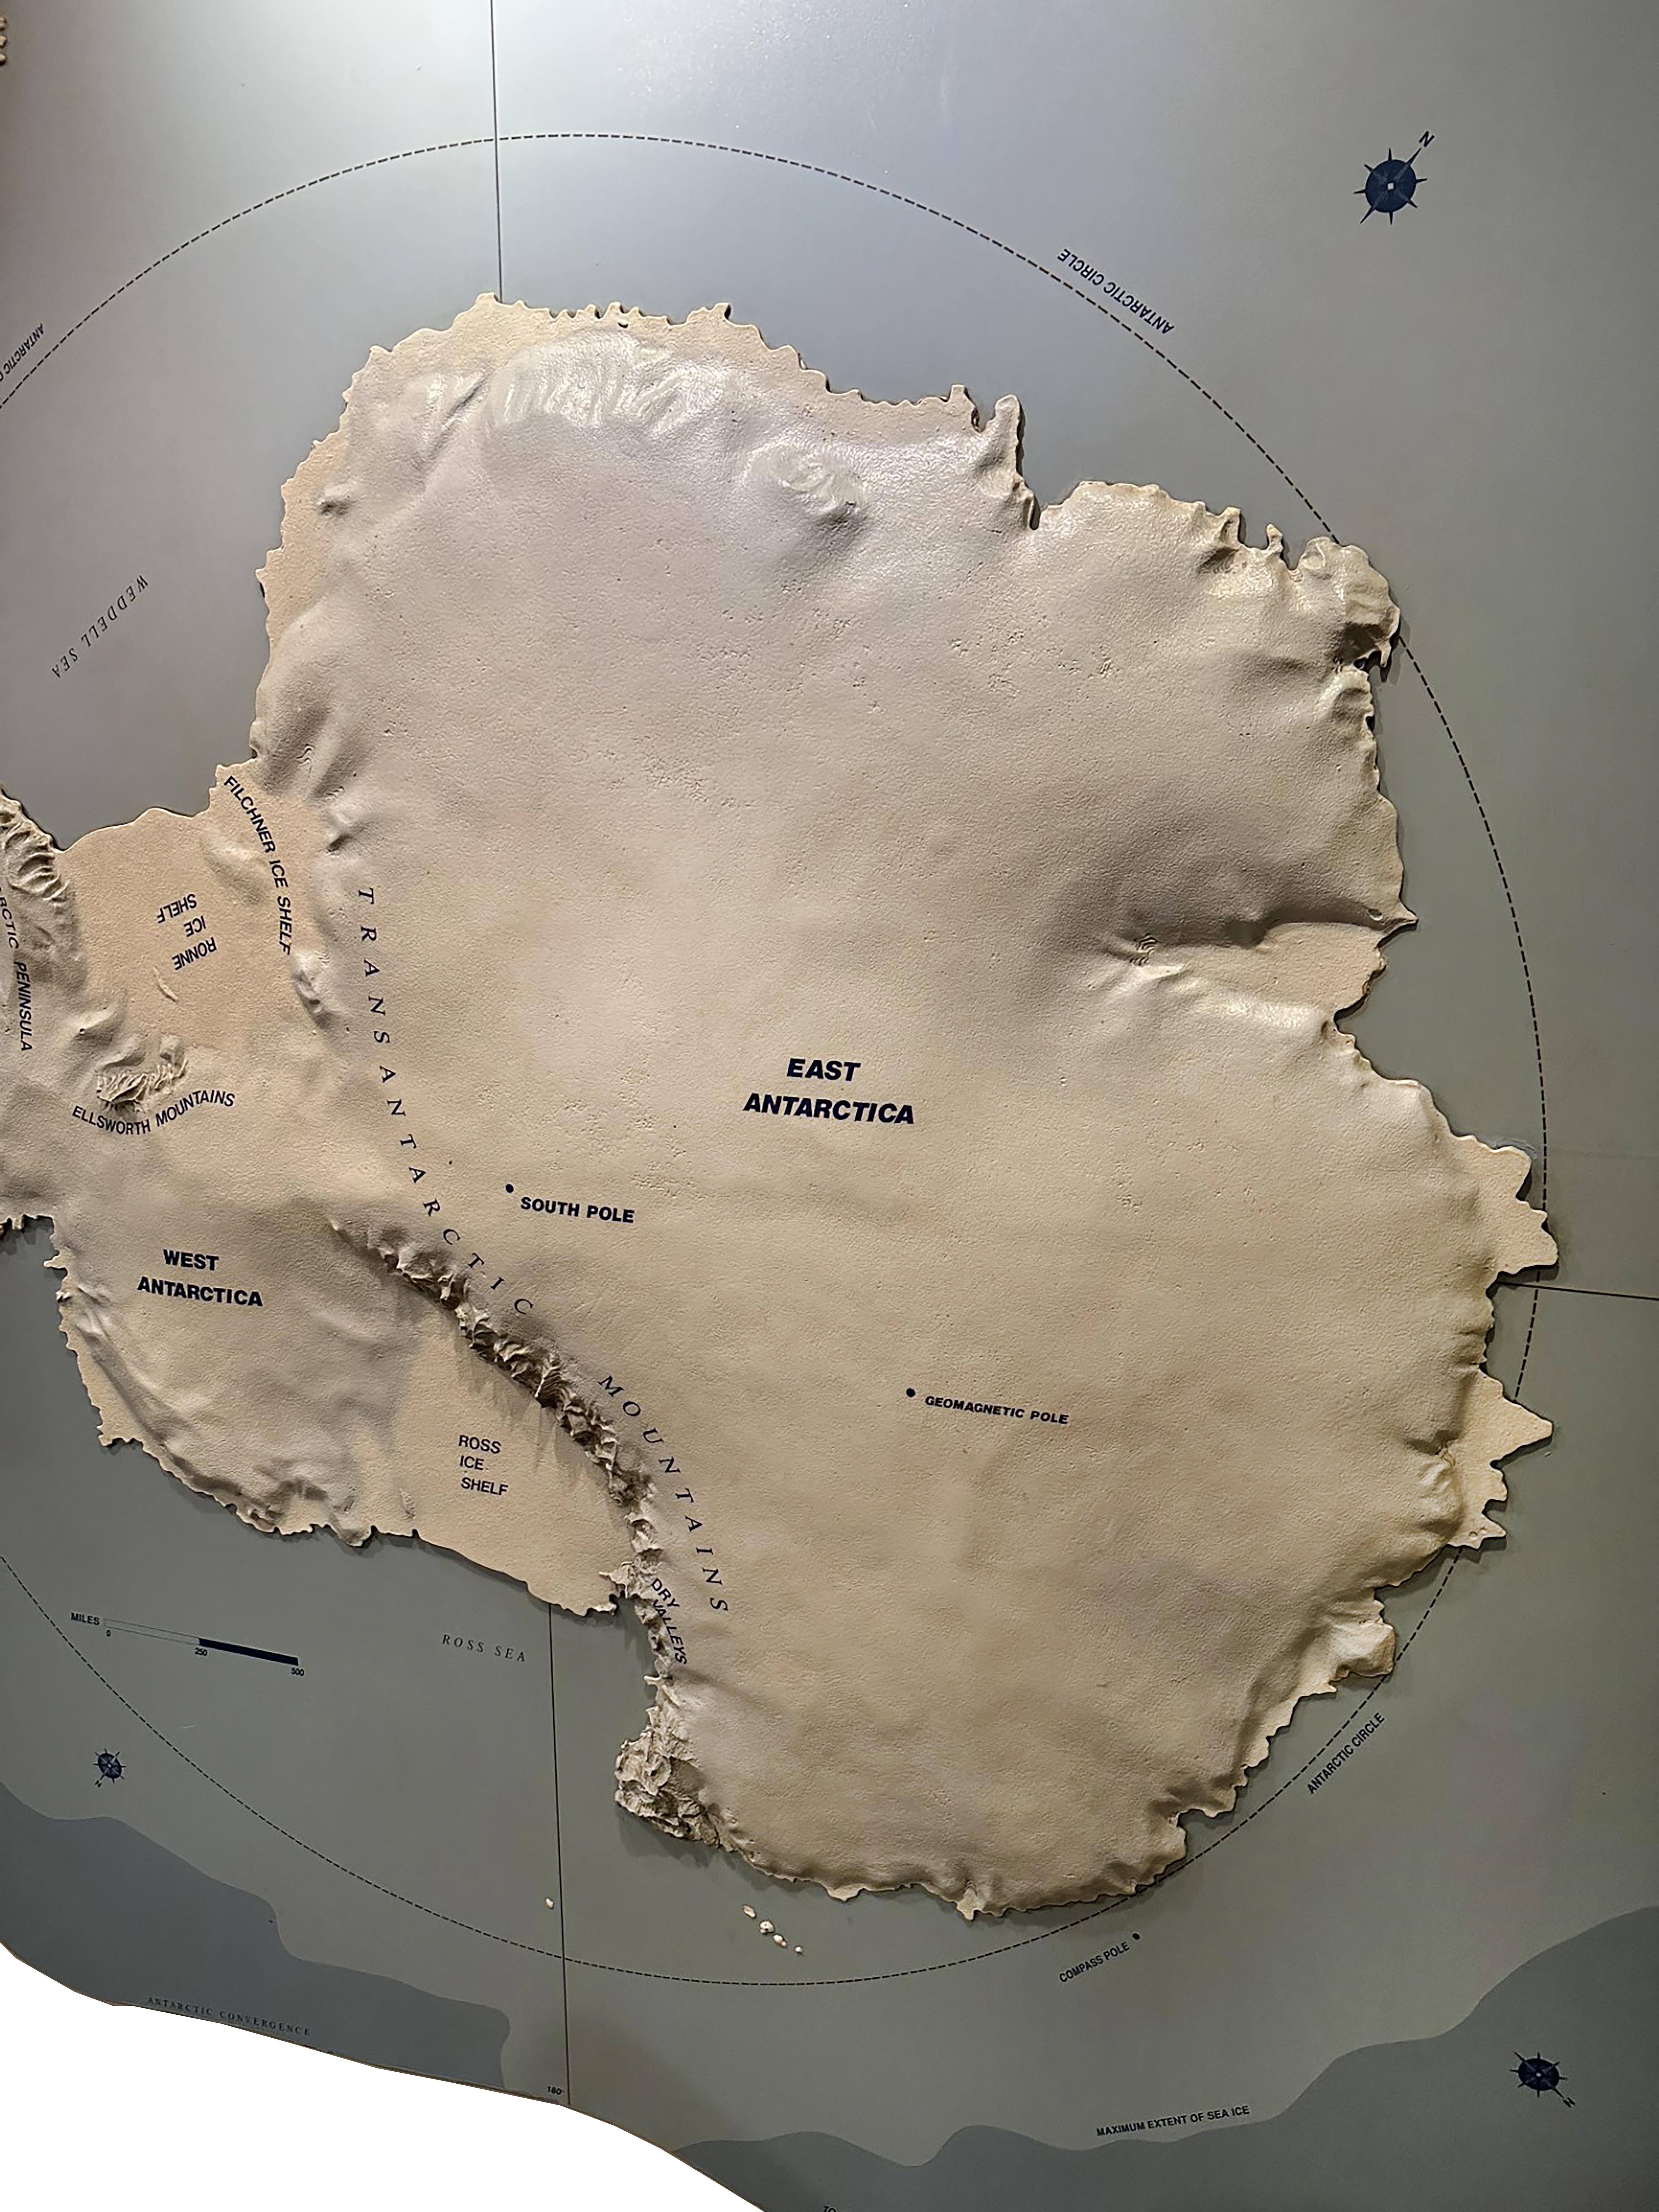 Une étonnante carte topographique murale en trois dimensions de l'Antarctique. Milieu du Siècle. Cette incroyable carte montre l'altitude, les plates-formes glaciaires et l'échelle du continent. Certains textes présentent différents lieux et